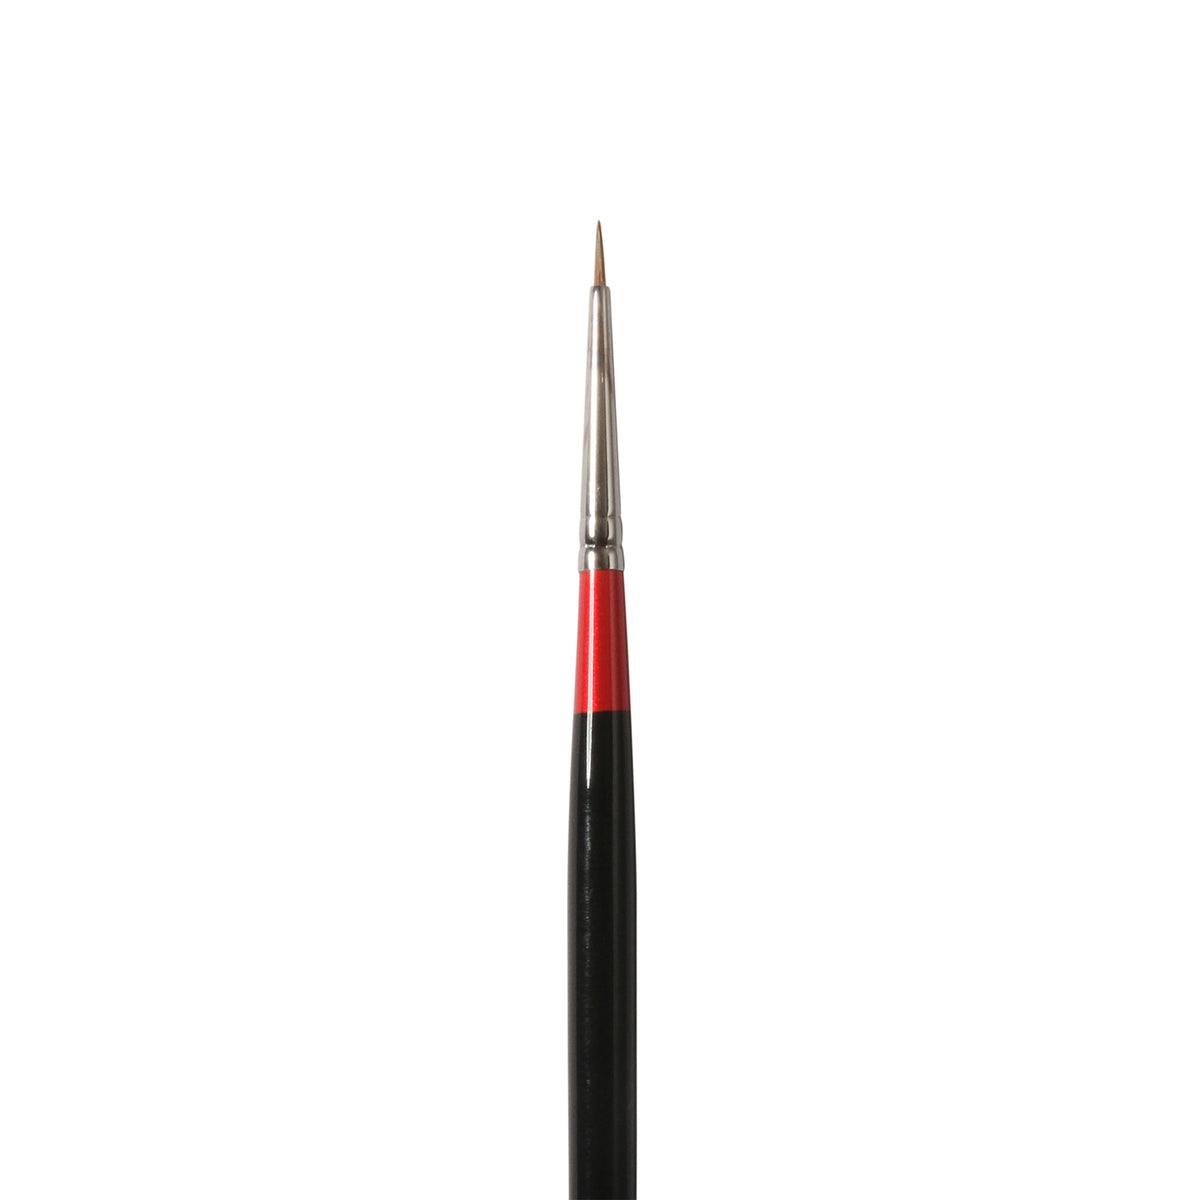 Daler-Rowney Georgian Sable Round Brushes G61 - Size 0